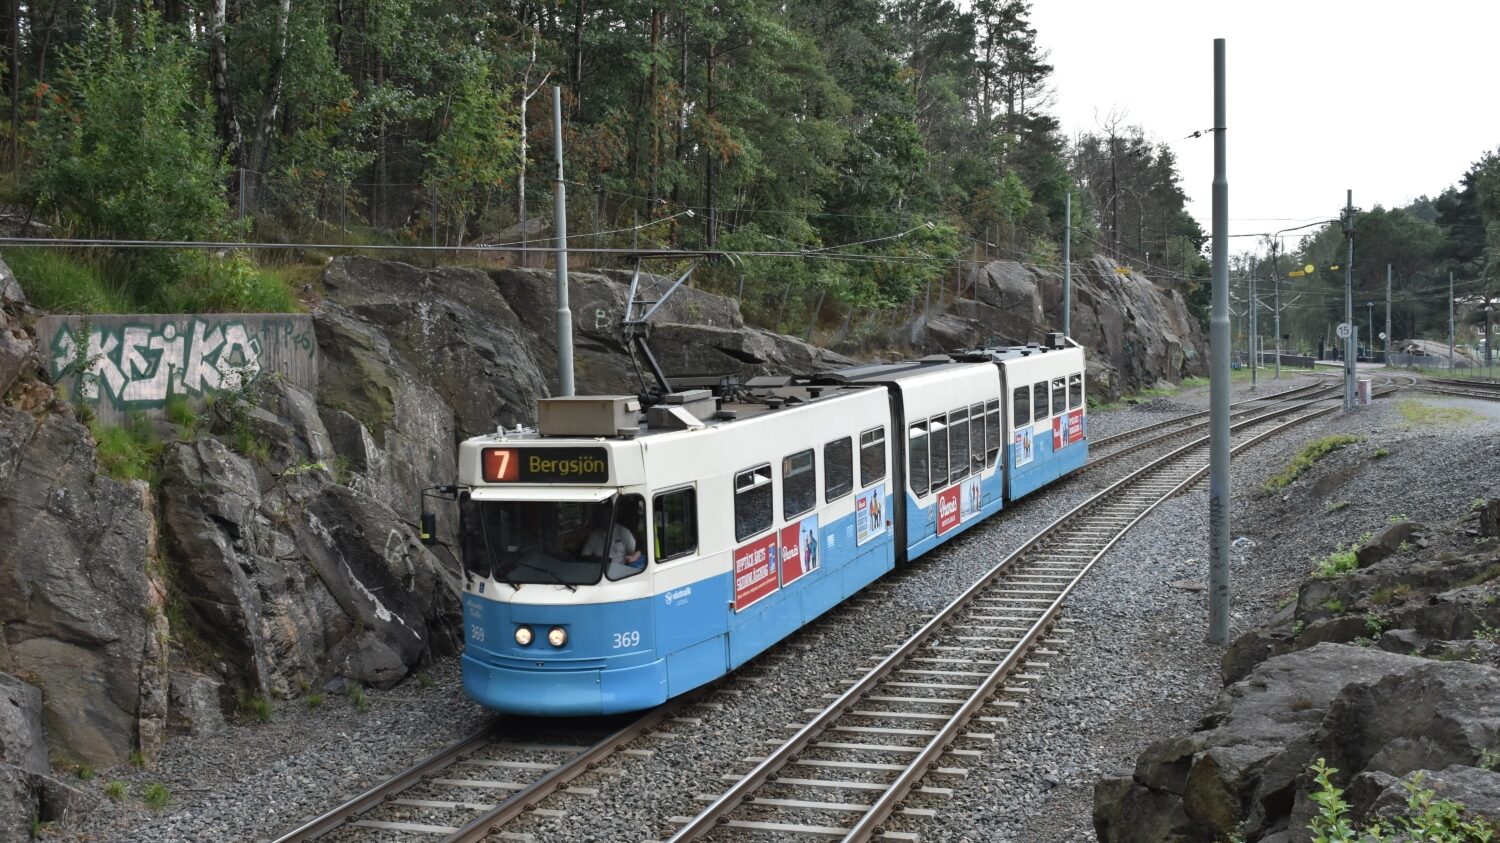 Tramvaj M31 projíždí tramvajovou tratí směrem na konečnou Bergsjön. Ta byla v 60. letech společně s dalšími tramvajovými tratěmi ve městě) postavena dle standardů pro připravované metro, jež však v Göteborgu nikdy nevyjelo. (foto: Libor Hinčica)